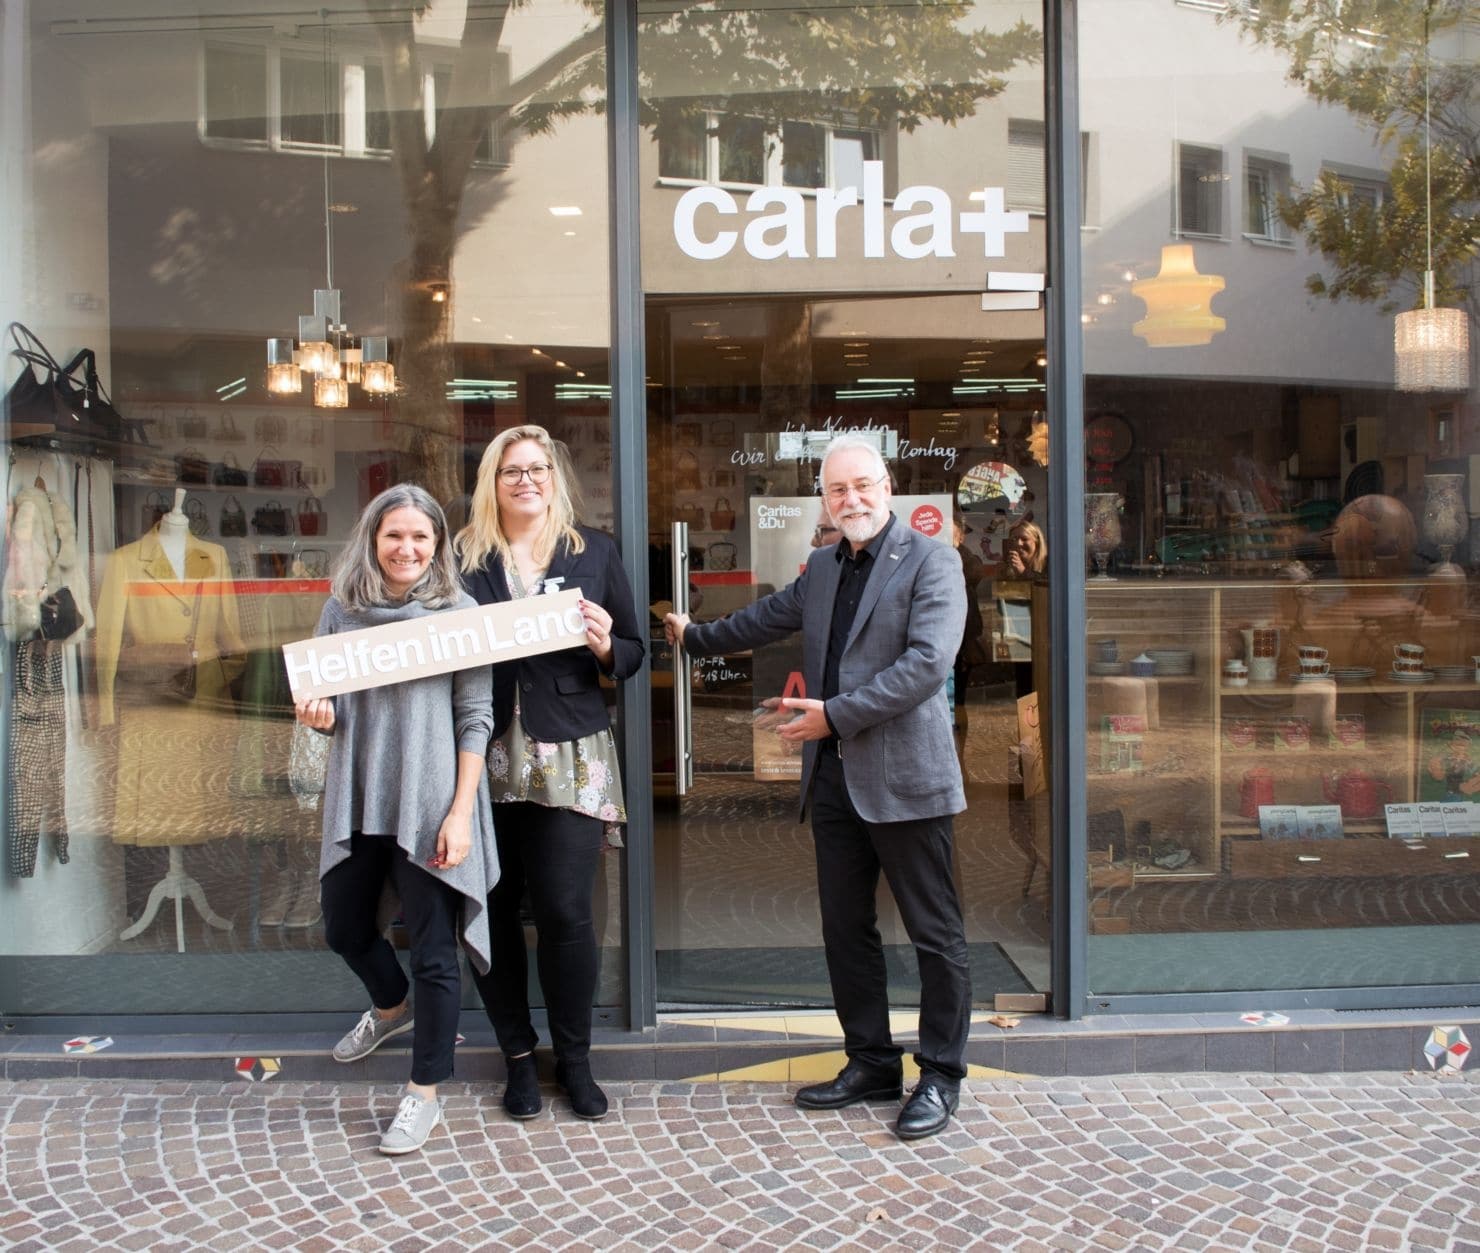 Seit 15. Oktober heißt es im neuen Caritas-Laden, dem carla+, in Villach hereinspaziert: Ursula Luschnig, Christina Staubmann, Josef Marketz                                    